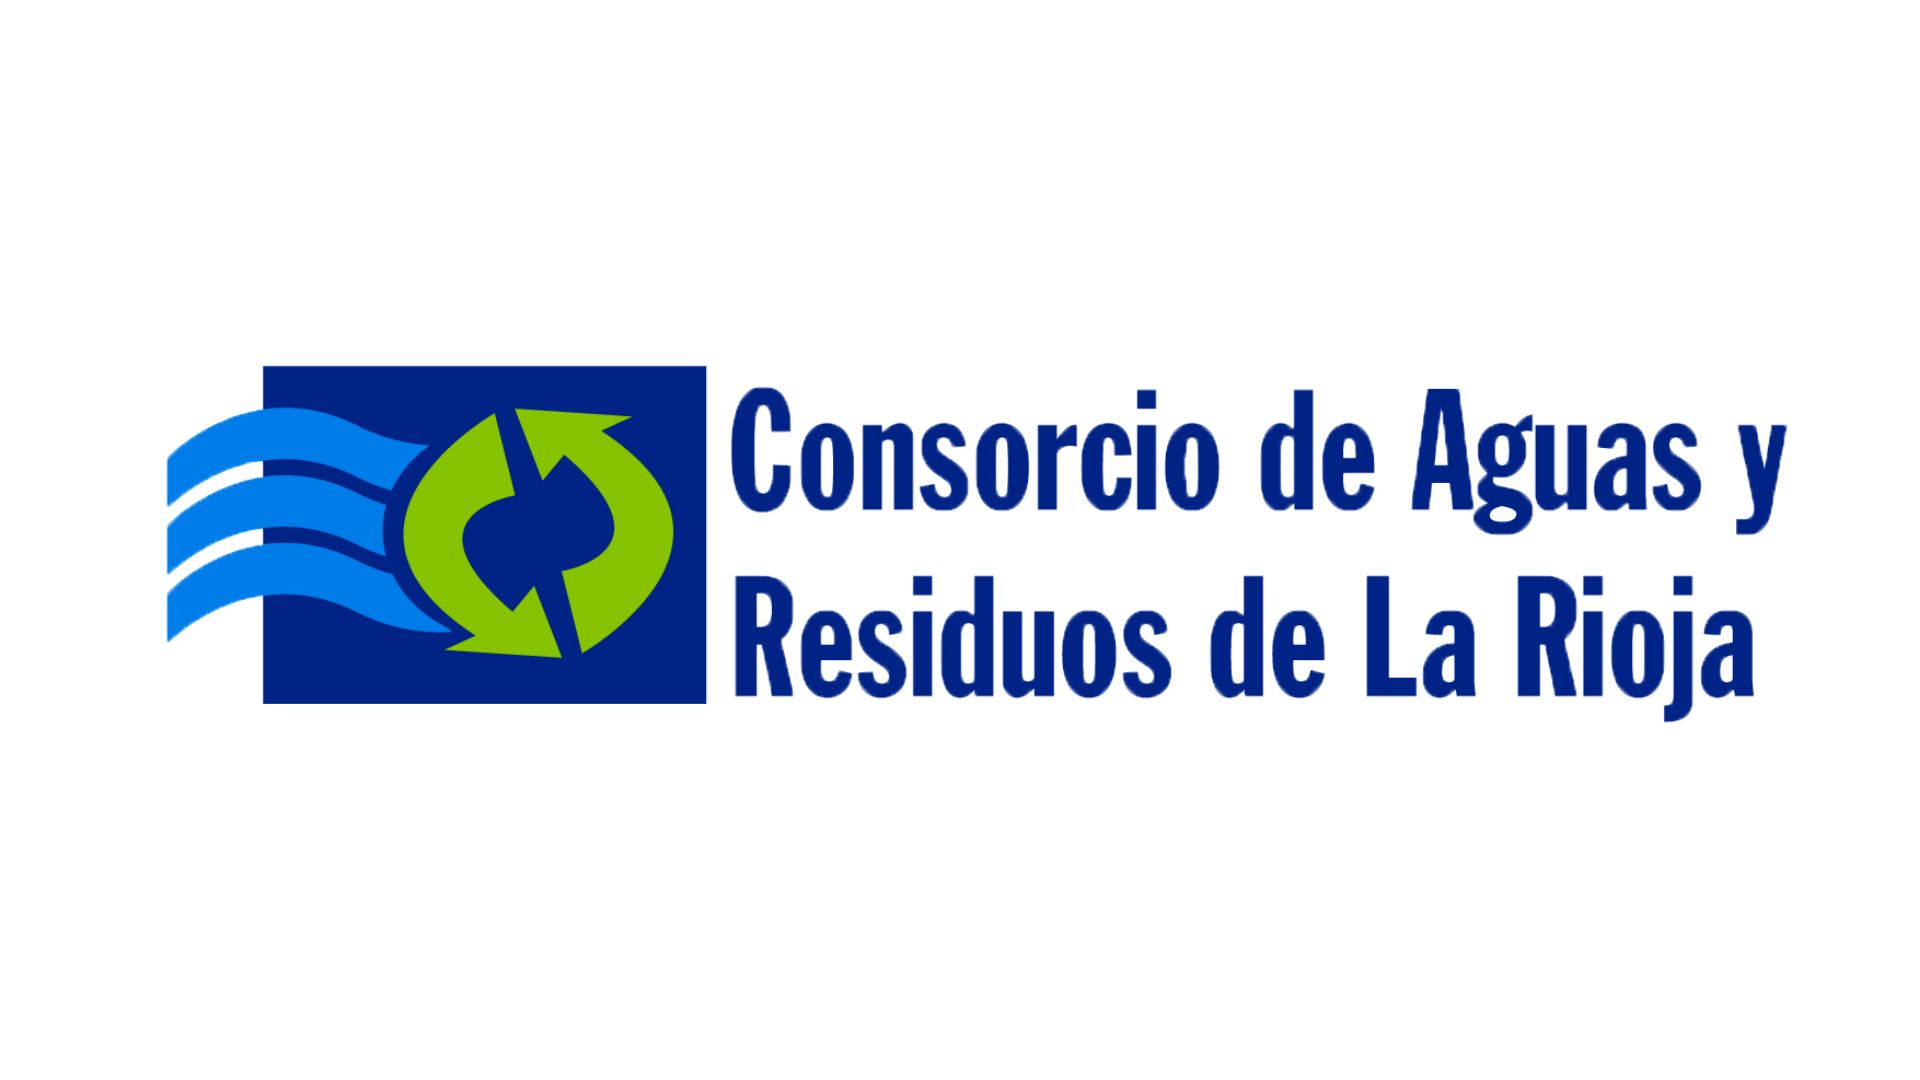 Consorcio de Aguas y Residuos de La Rioja